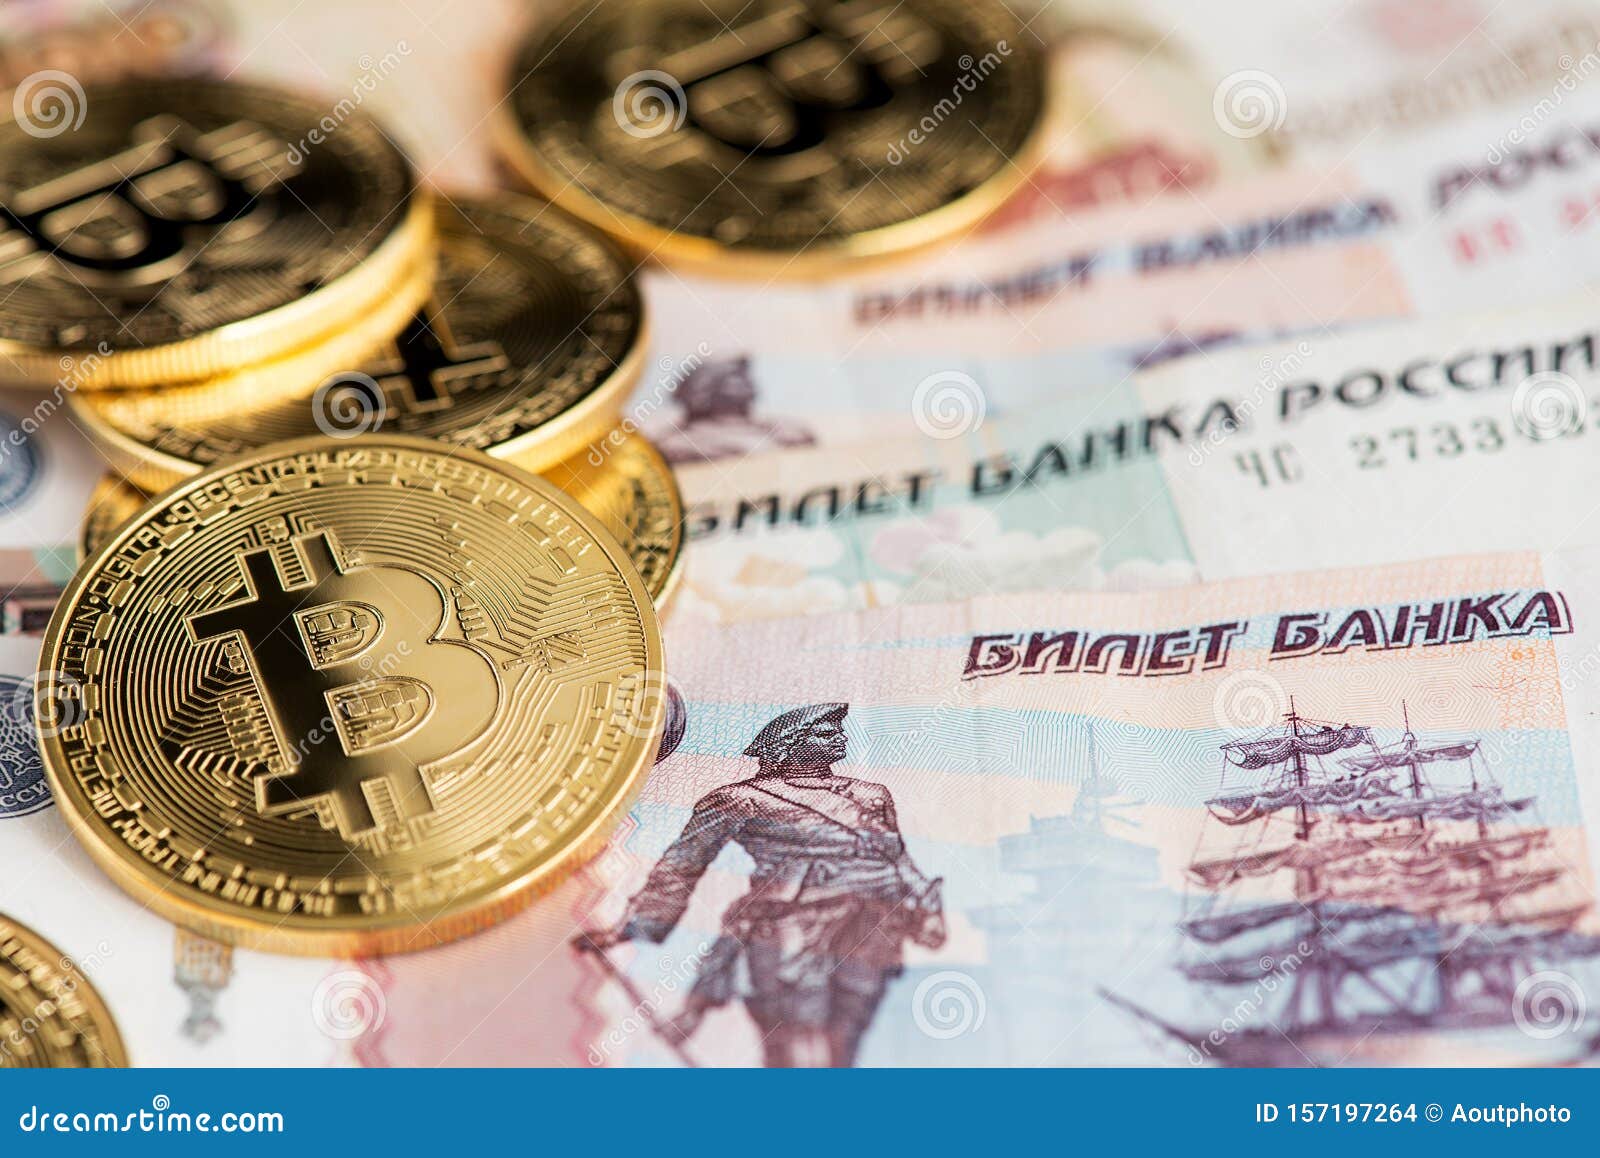 Обмен btc на рубли банка русский стандарт график биткоина онлайн